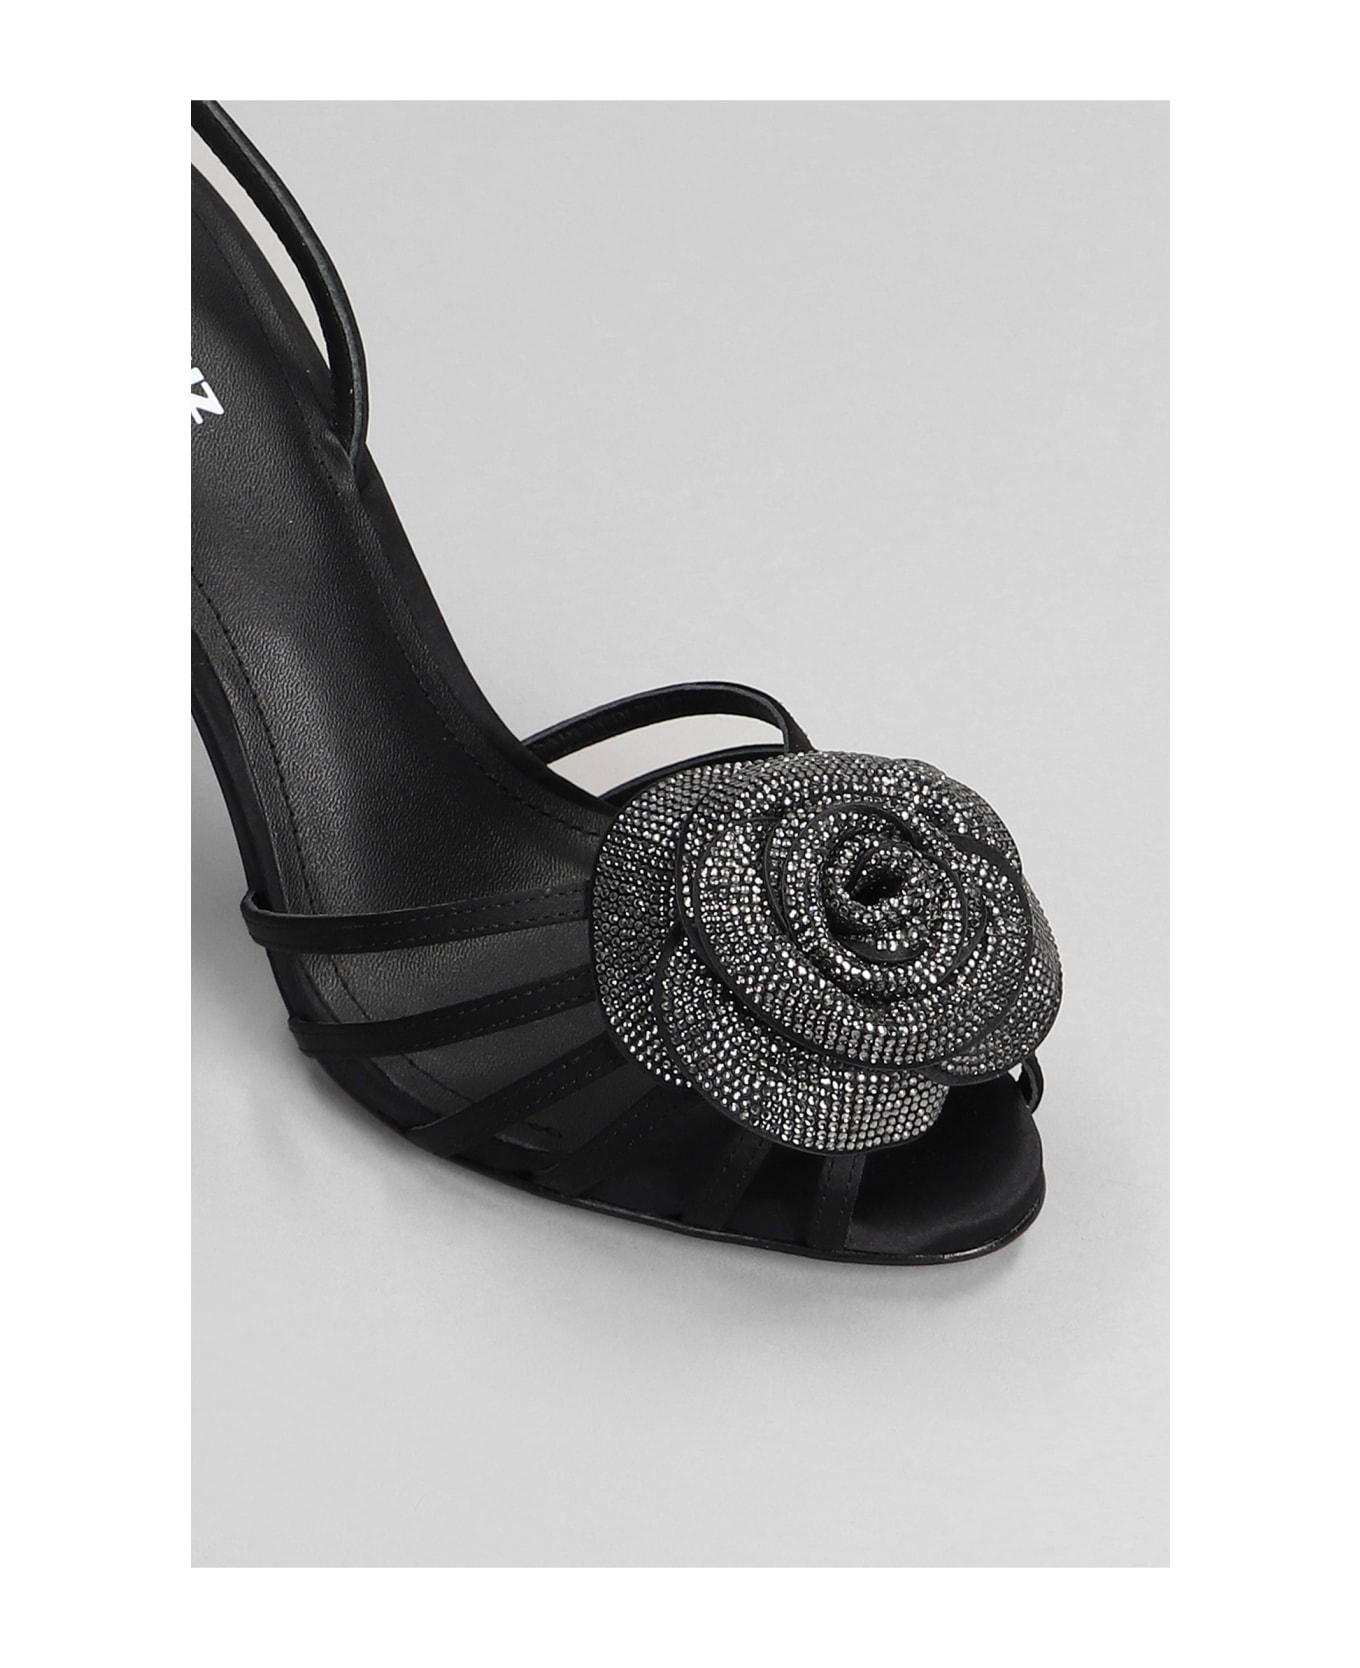 Lola Cruz Rose 95 Sandals In Black Satin - black